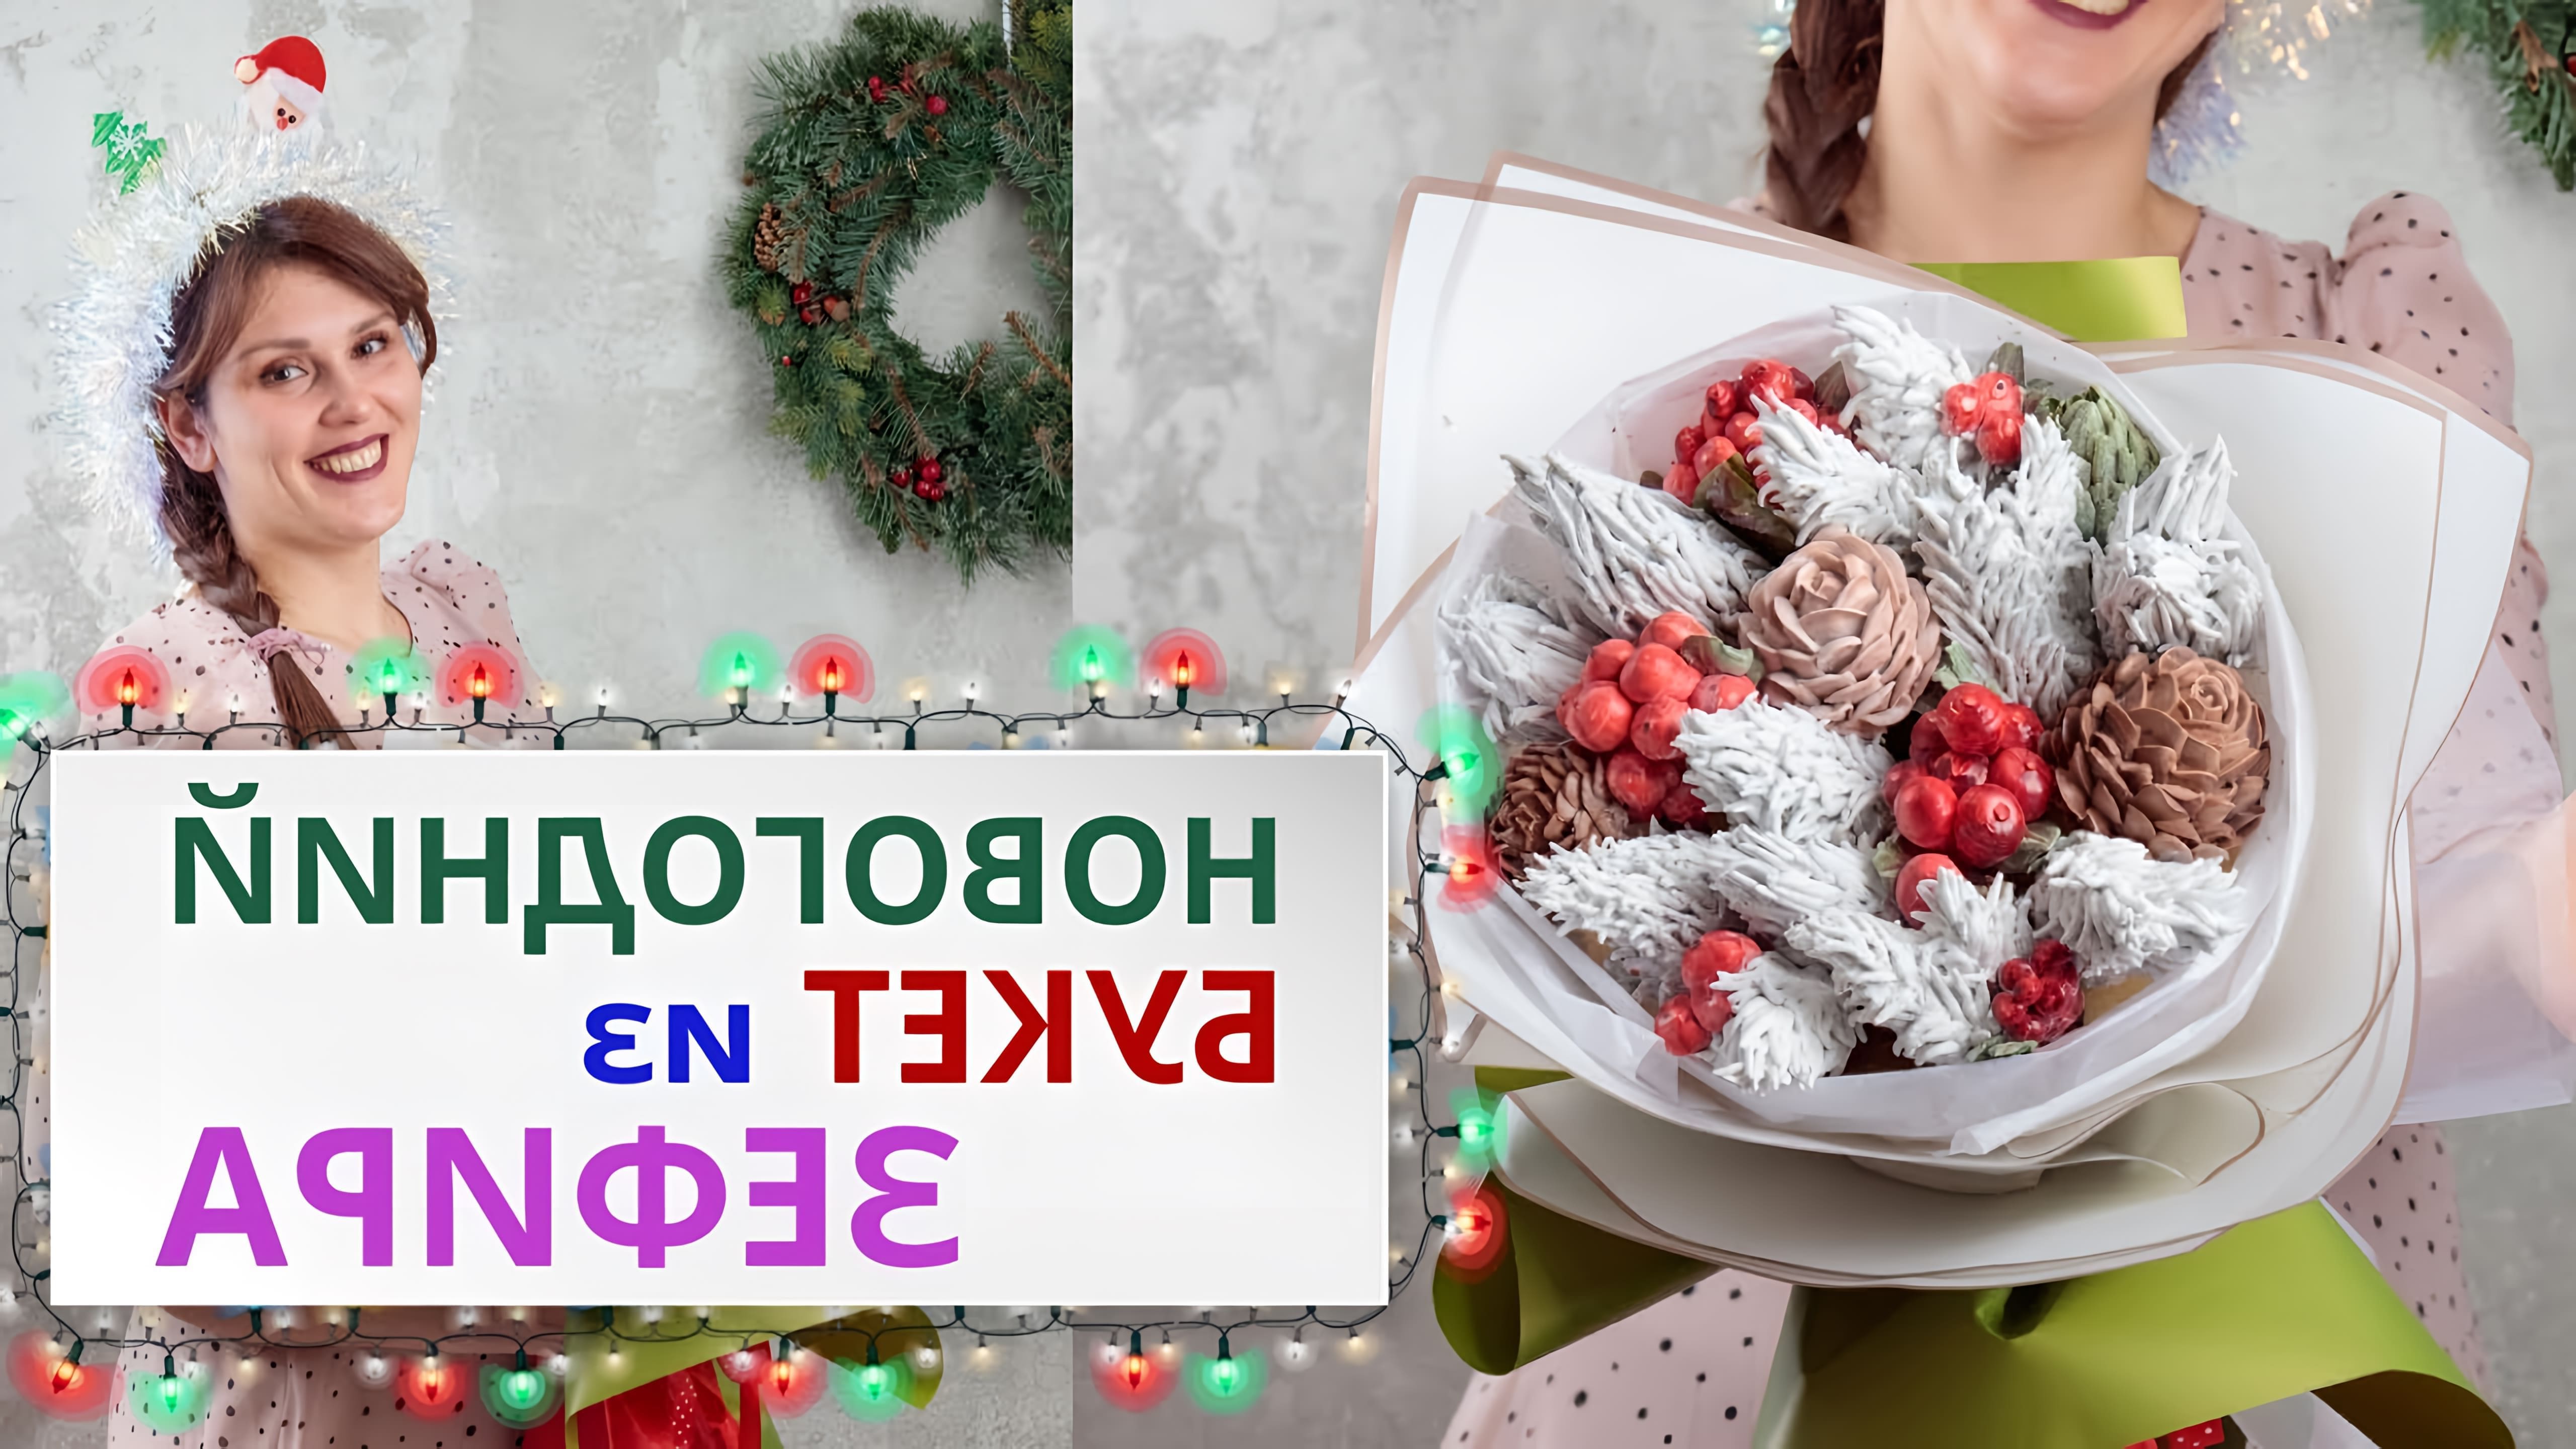 В этом видео показано, как сделать зимний букет из зефира, шишек и ягод